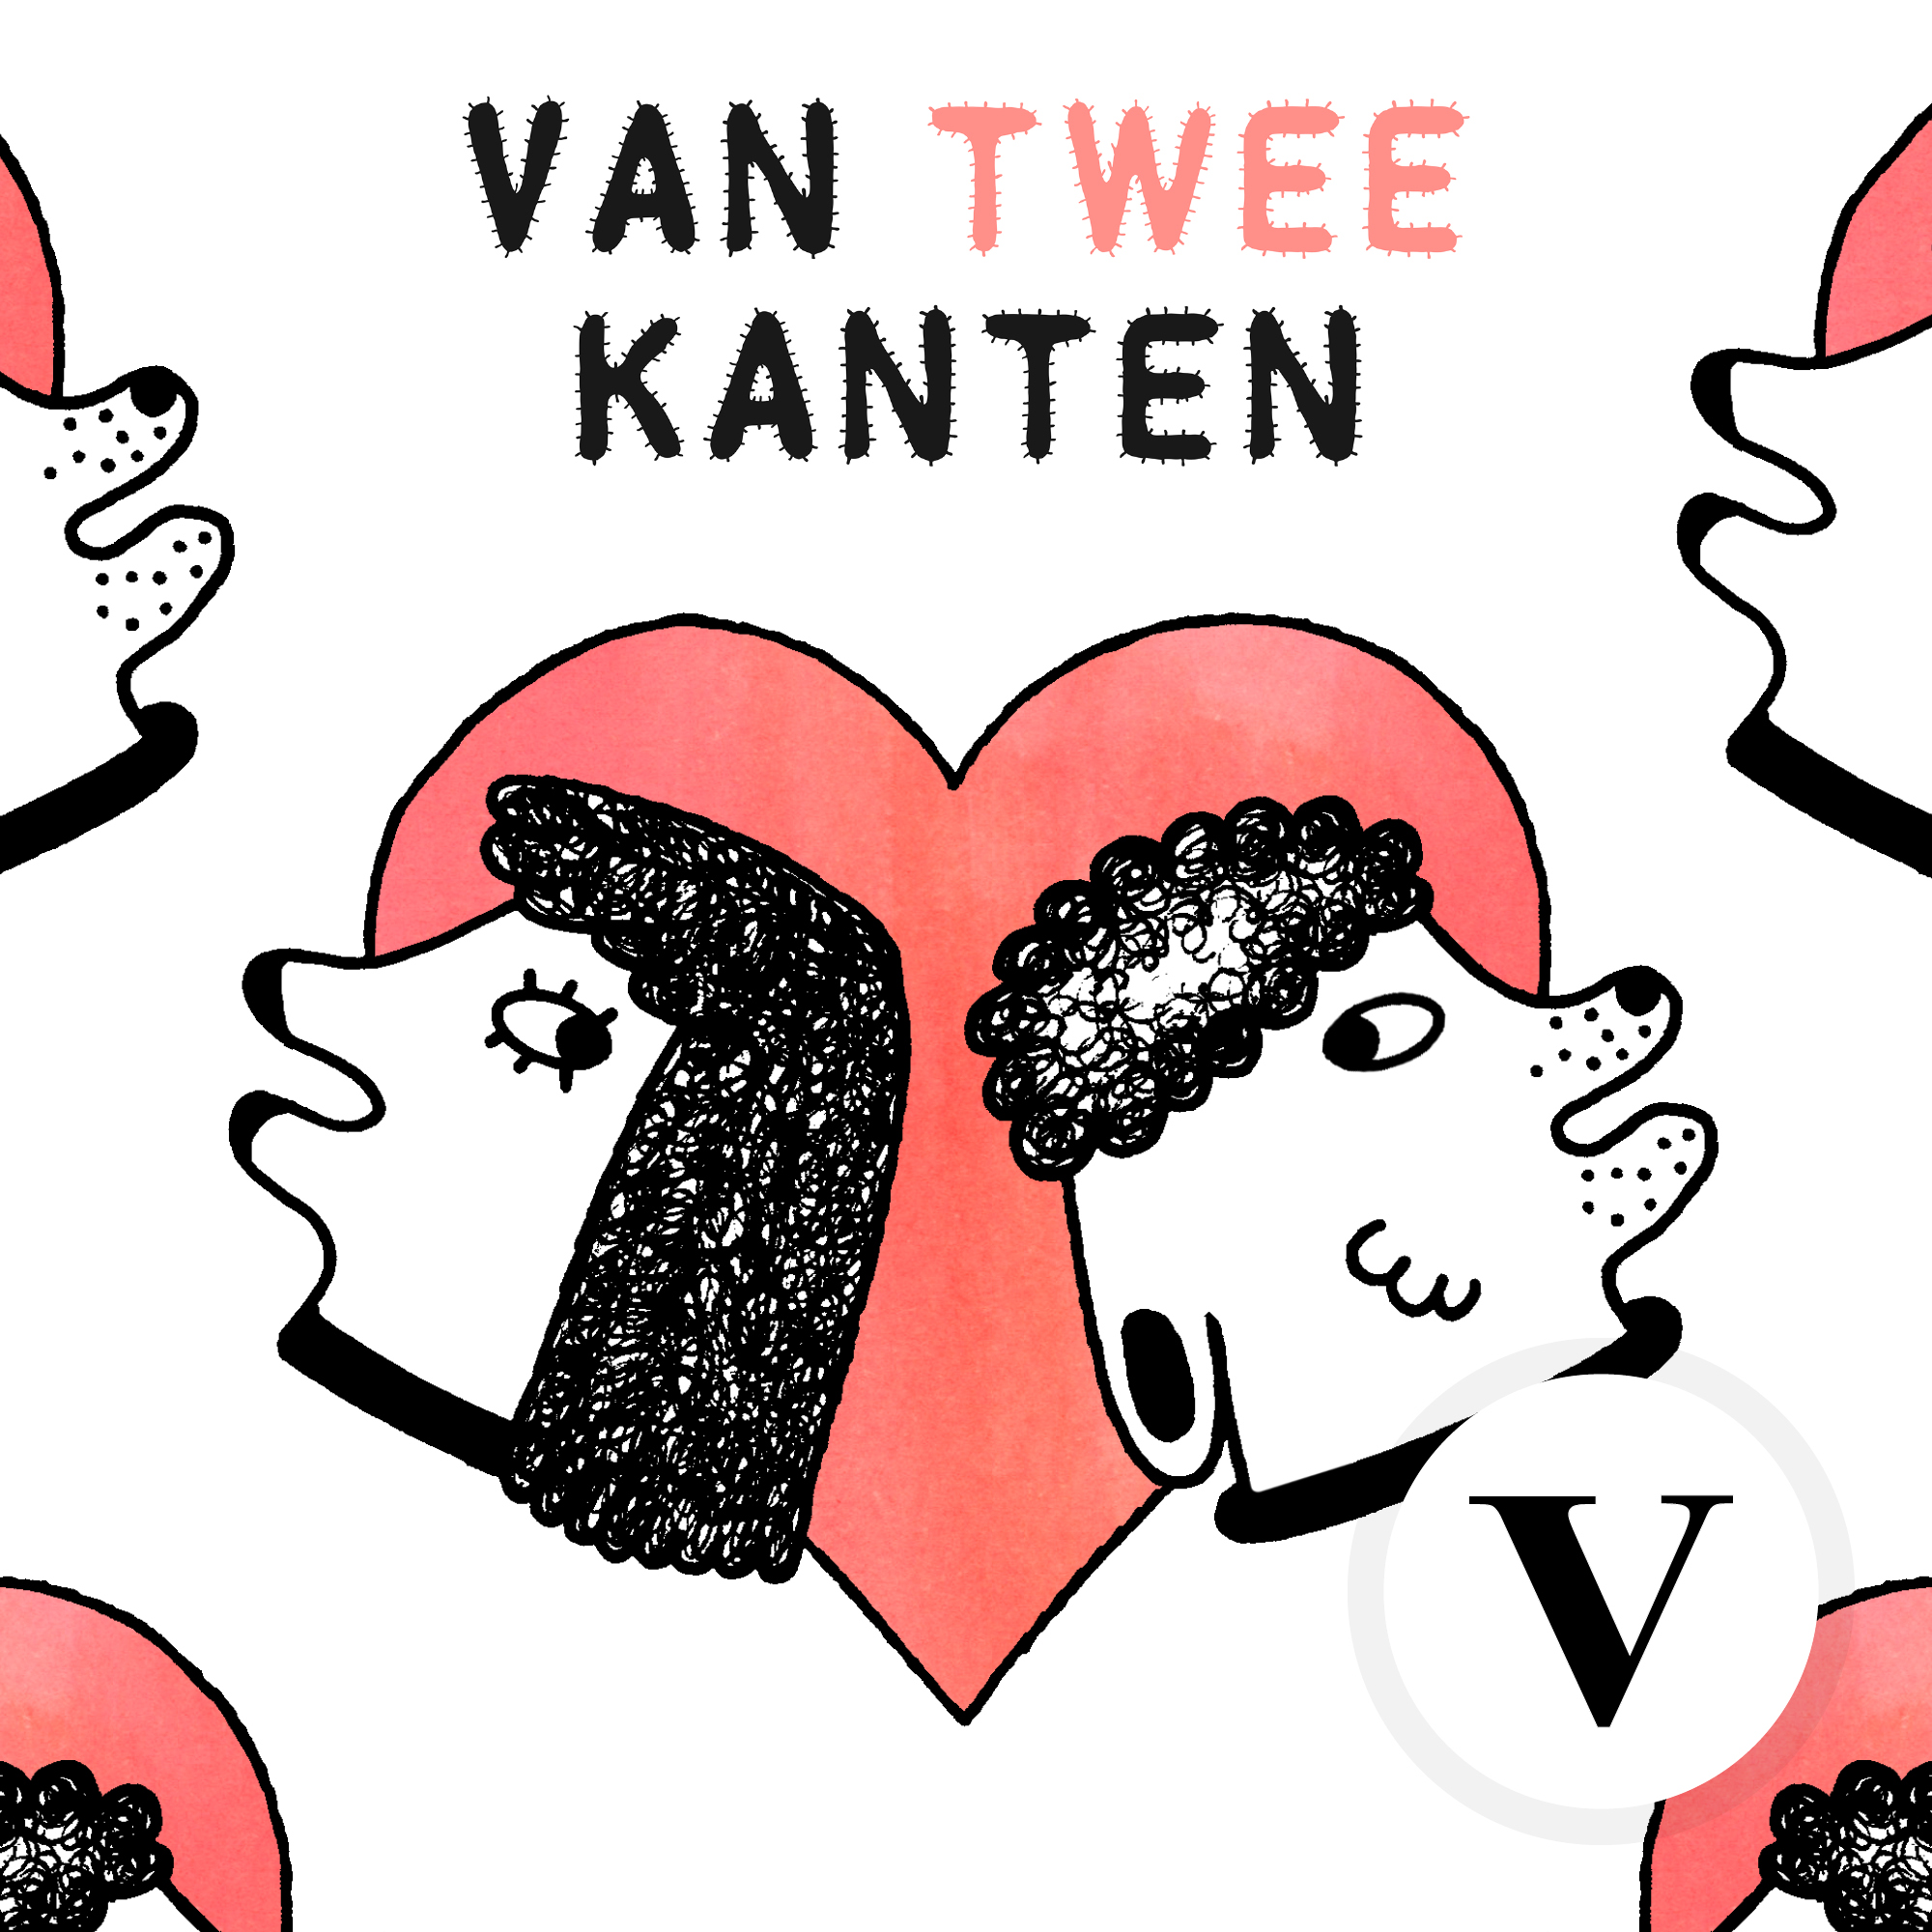 Van Twee Kanten podcast show image